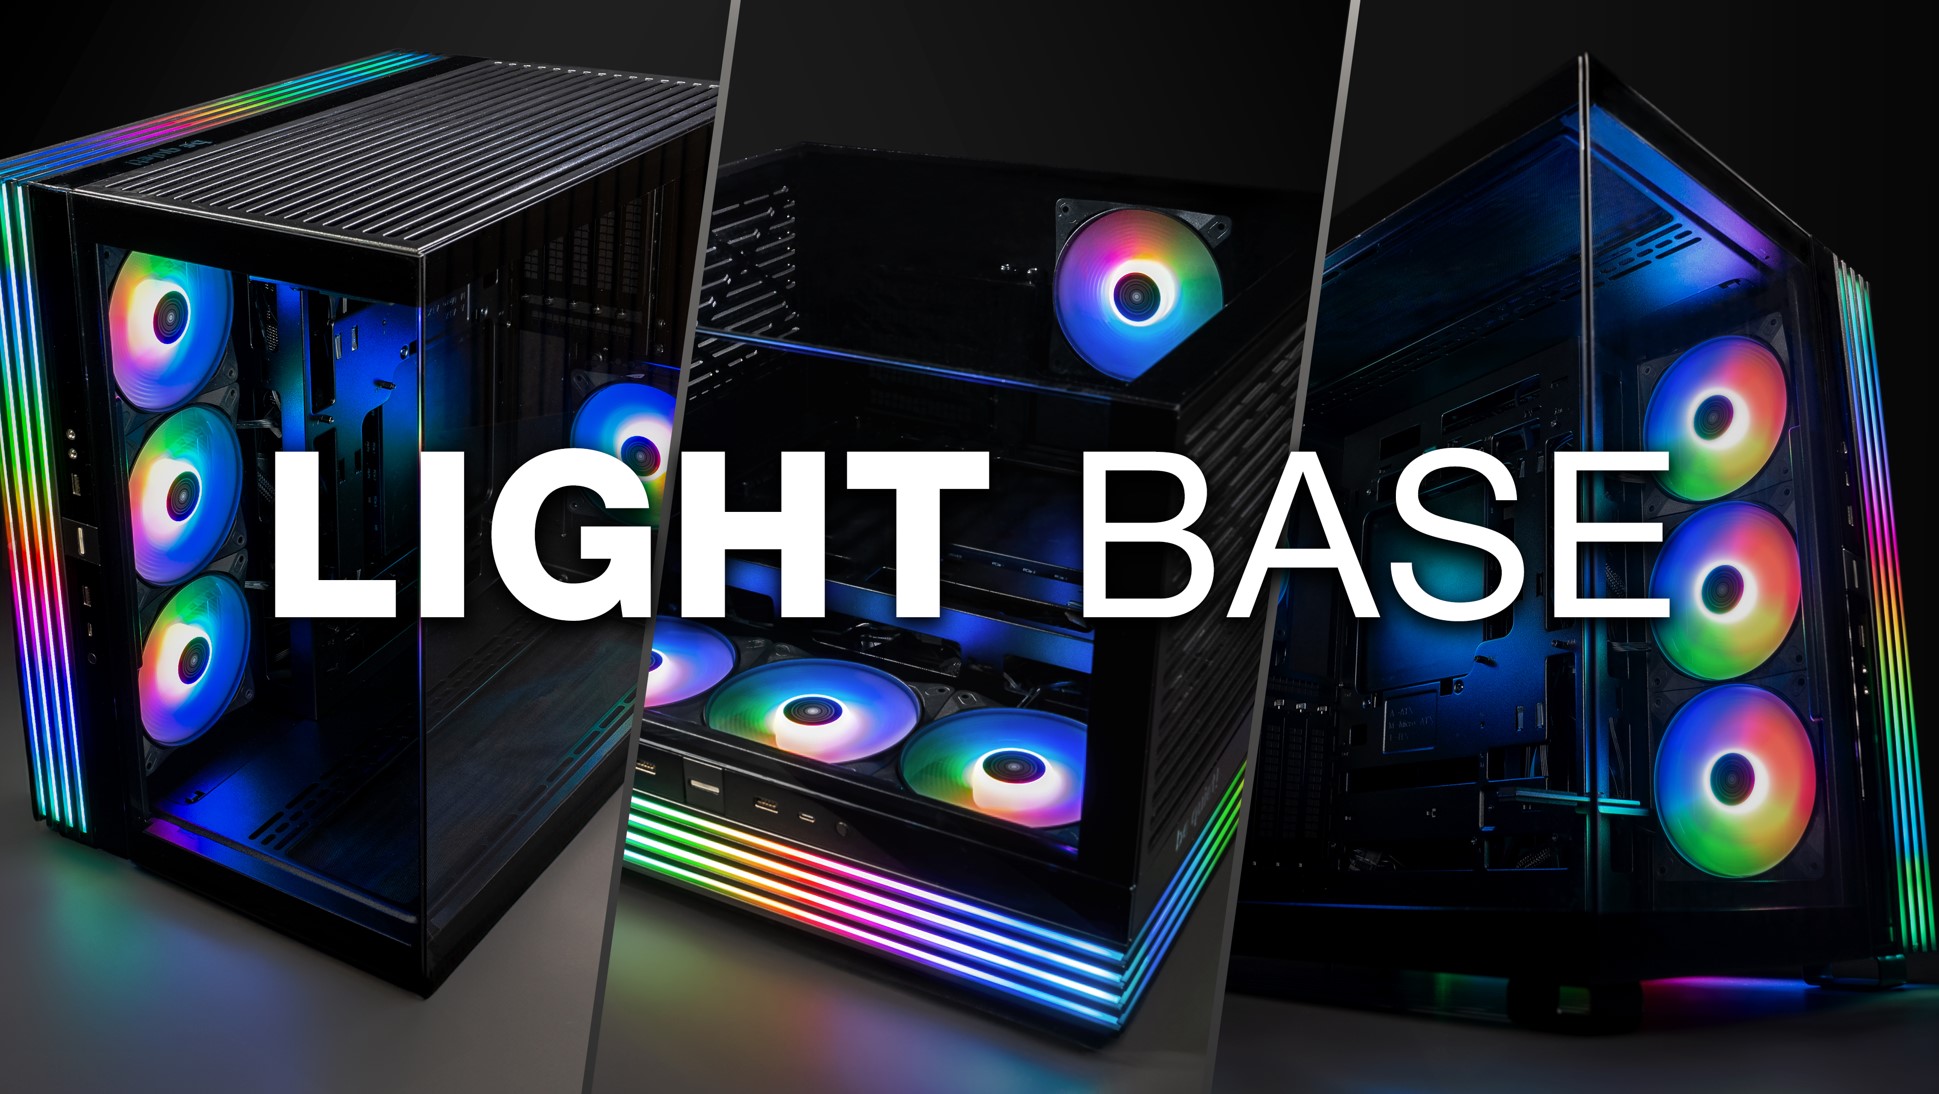 LightBase Case BeQuiet